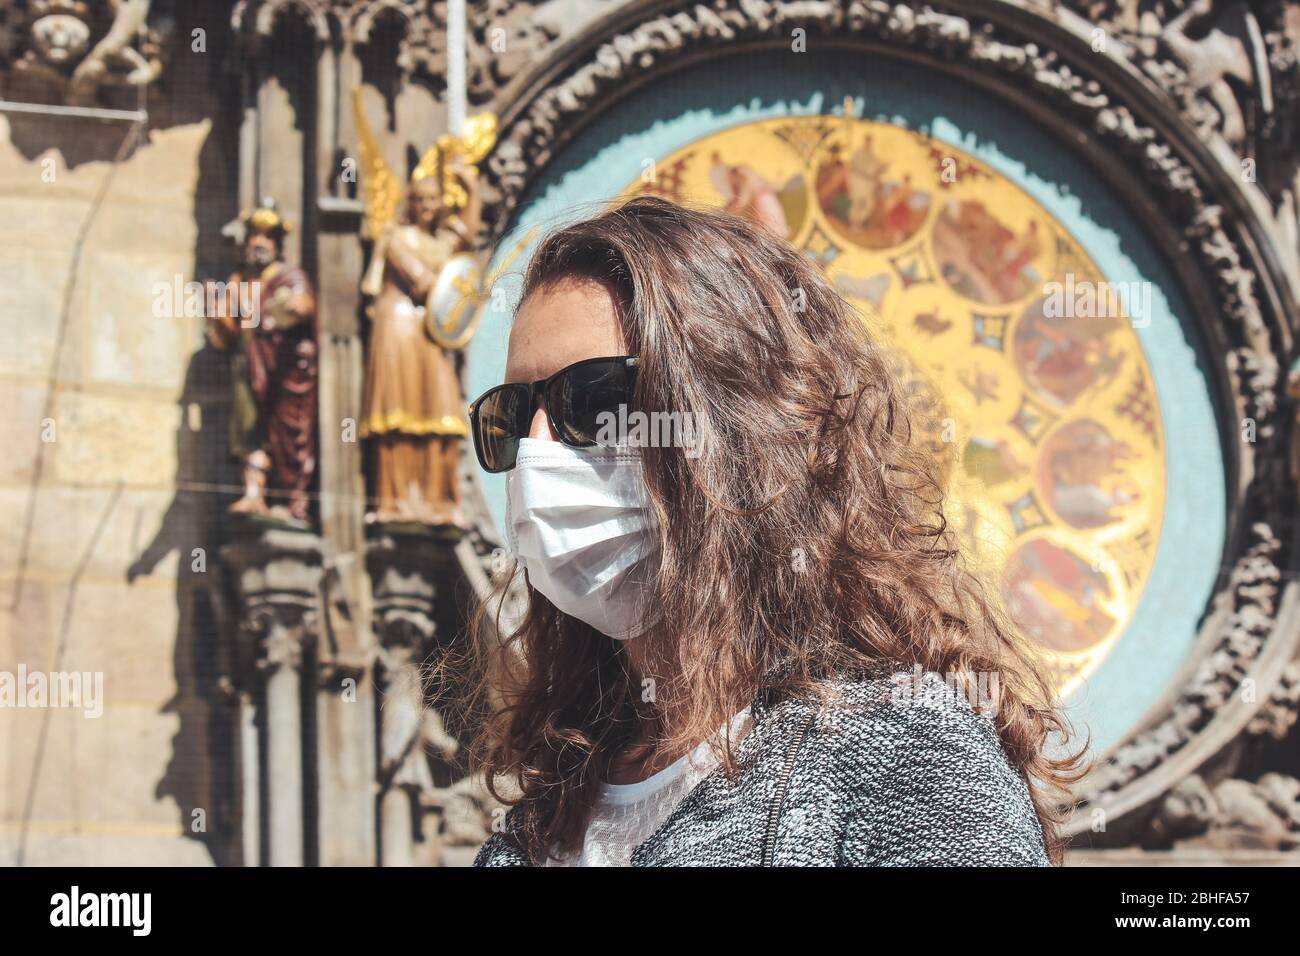 Jeune femme caucasienne avec lunettes de soleil et masque médical photographié devant l'horloge astronomique Orloj à Prague, en République tchèque. Voyager, tourisme pendant coronavirus. Concept COVID-19. Banque D'Images